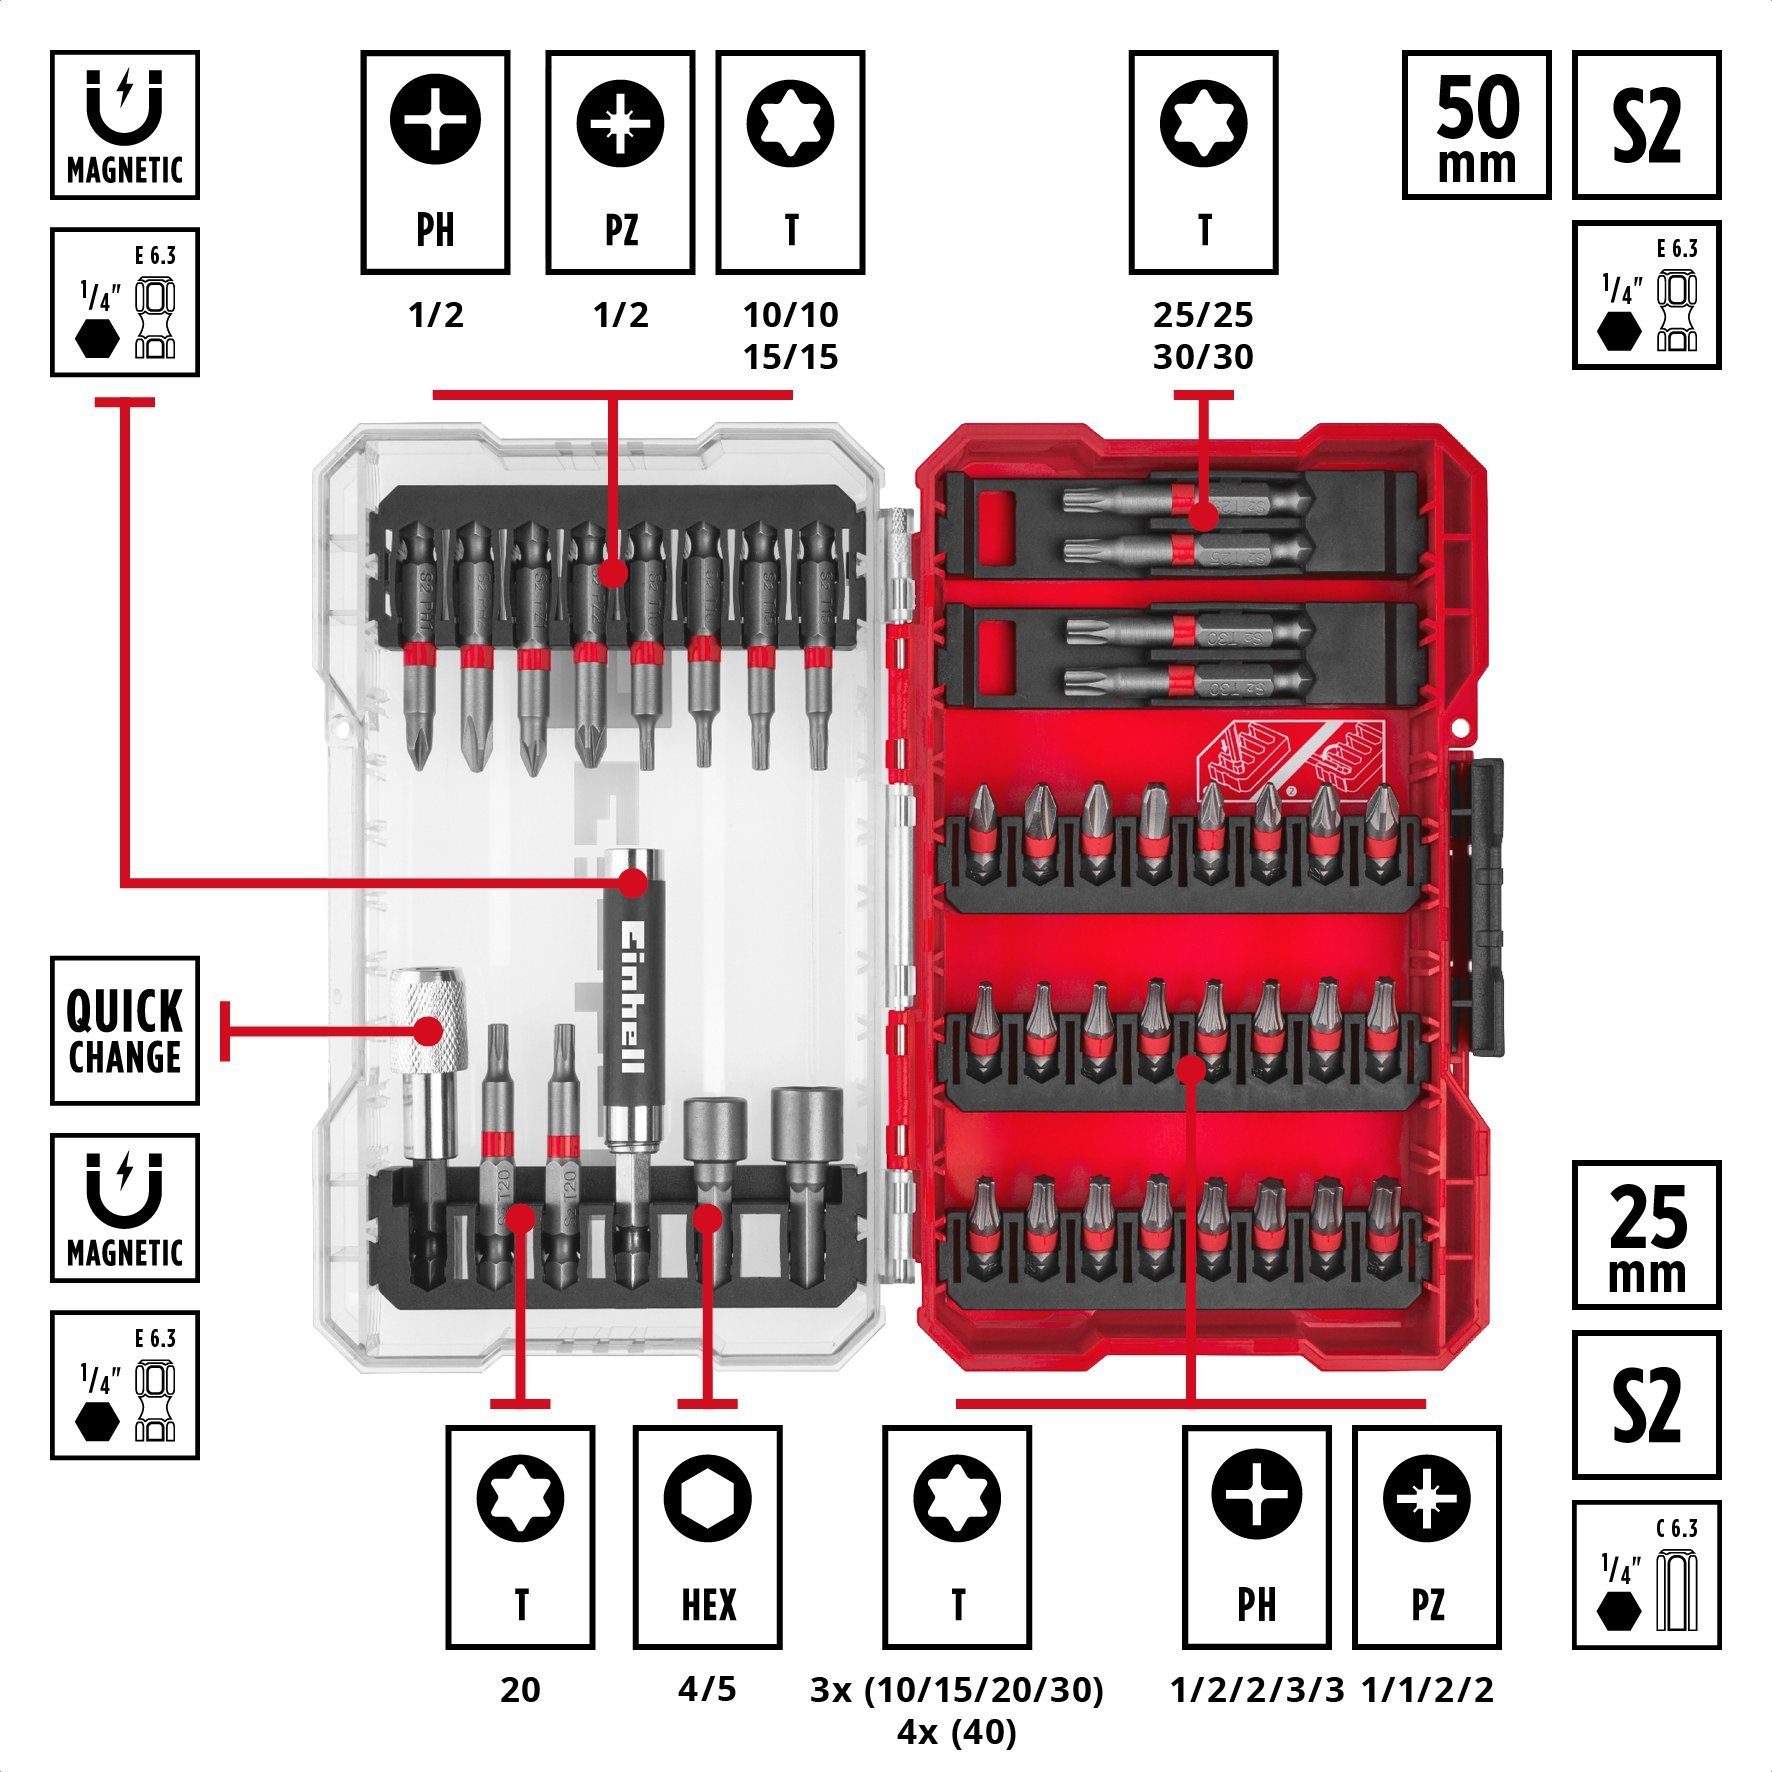 Steckschlüssel Einhell Bit-Set 25-mm, Bits, Bit-Set, 42-tlg. 50-mm Magnethalter, M-CASE